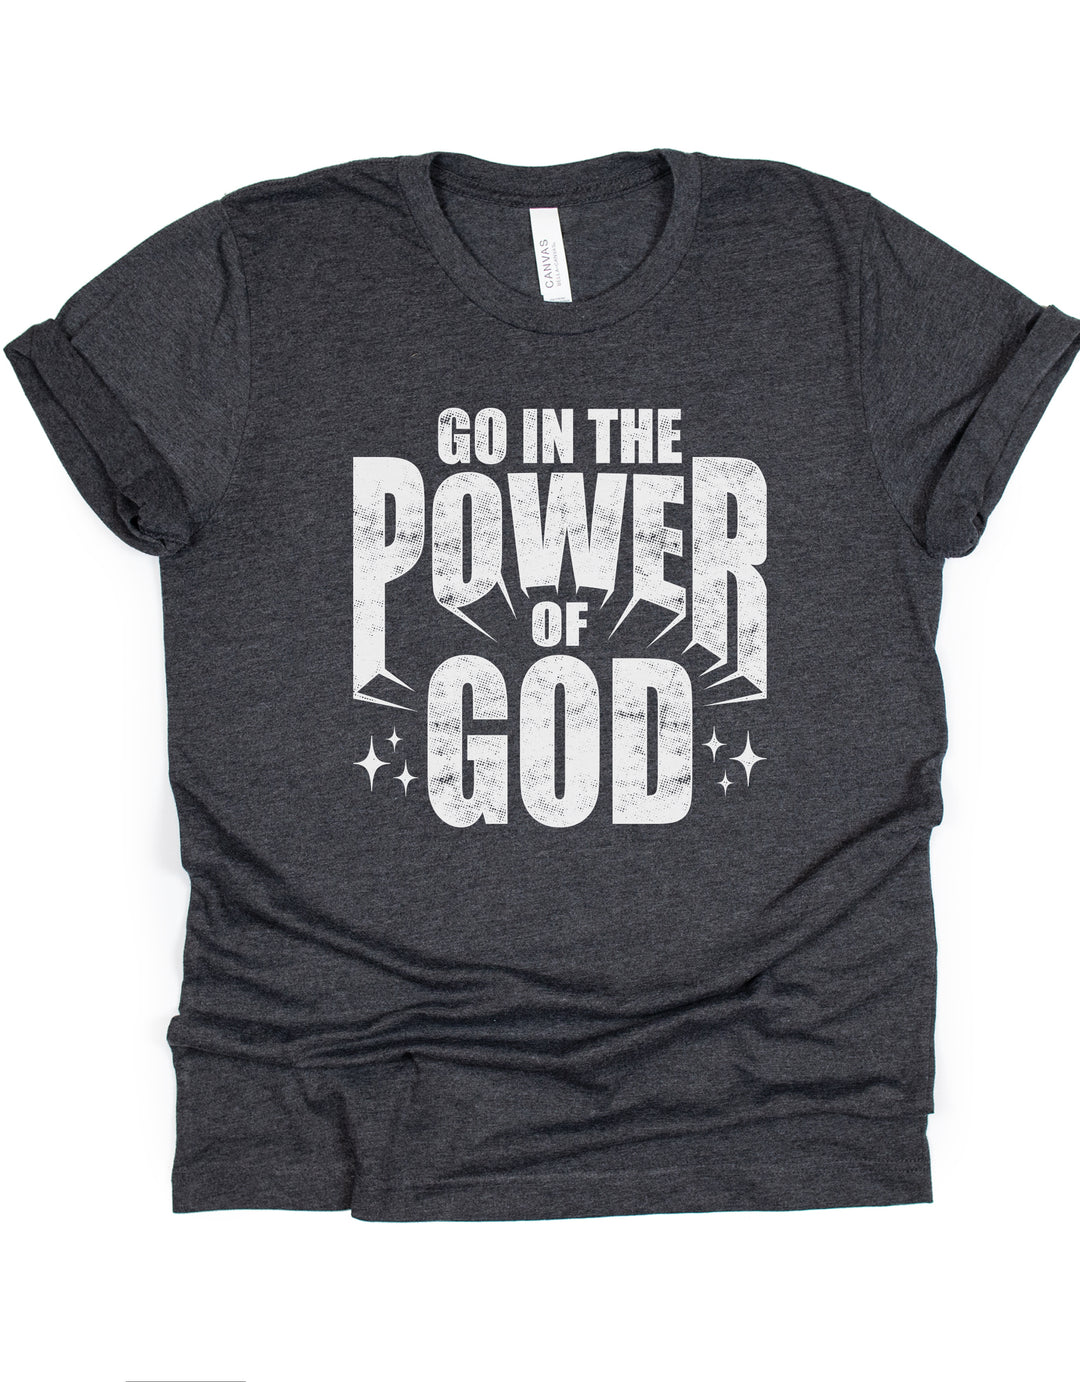 Go In The Power Of God - Unisex Crew-Neck Tee